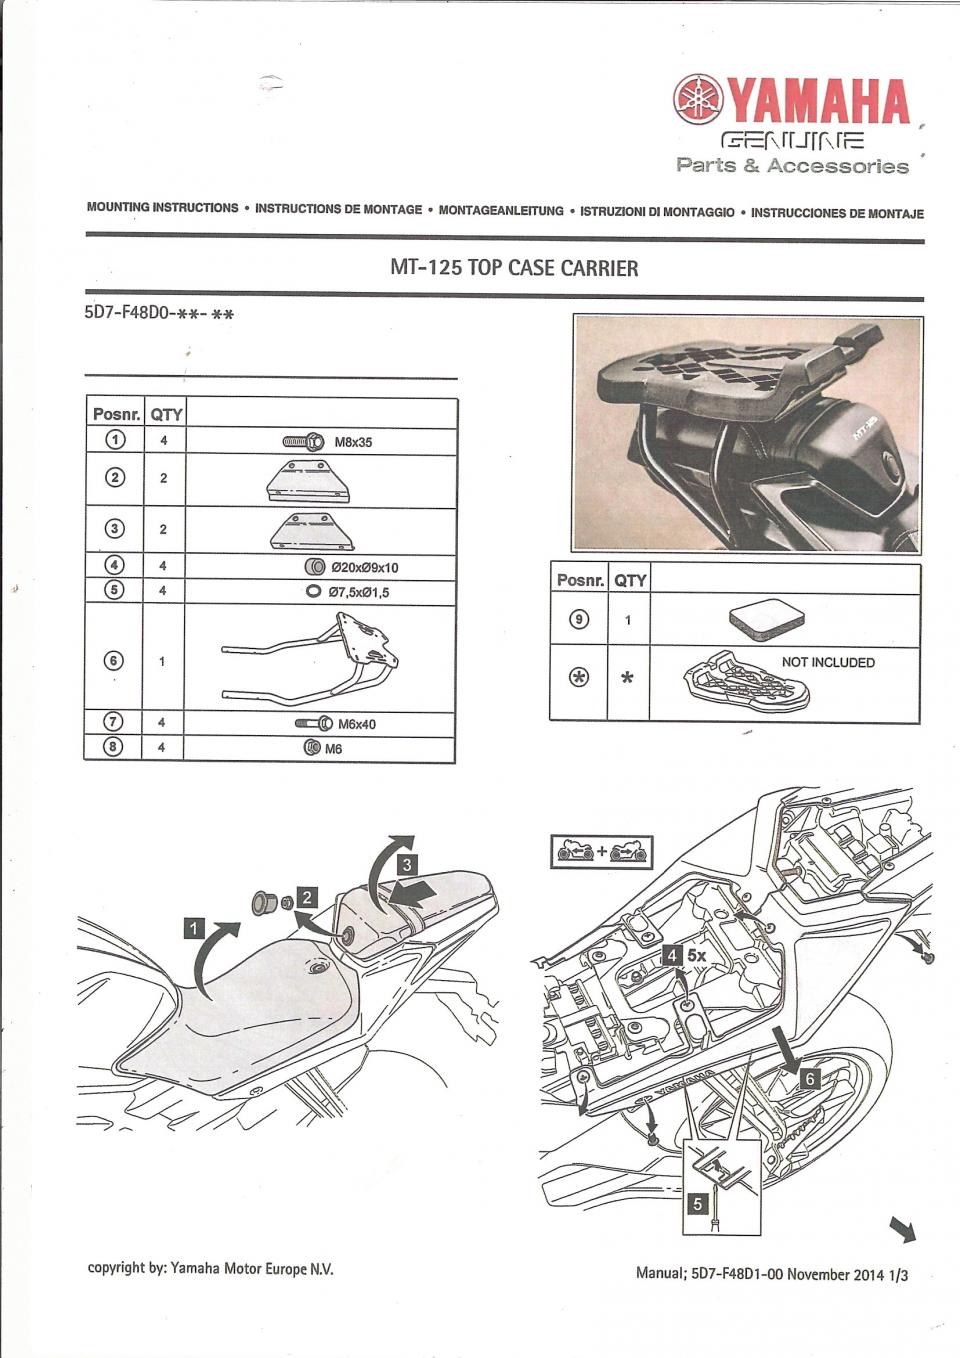 Support de top case Noir pour moto Yamaha 125 MT 2014 5D7-F48D0-00-P0 Neuf